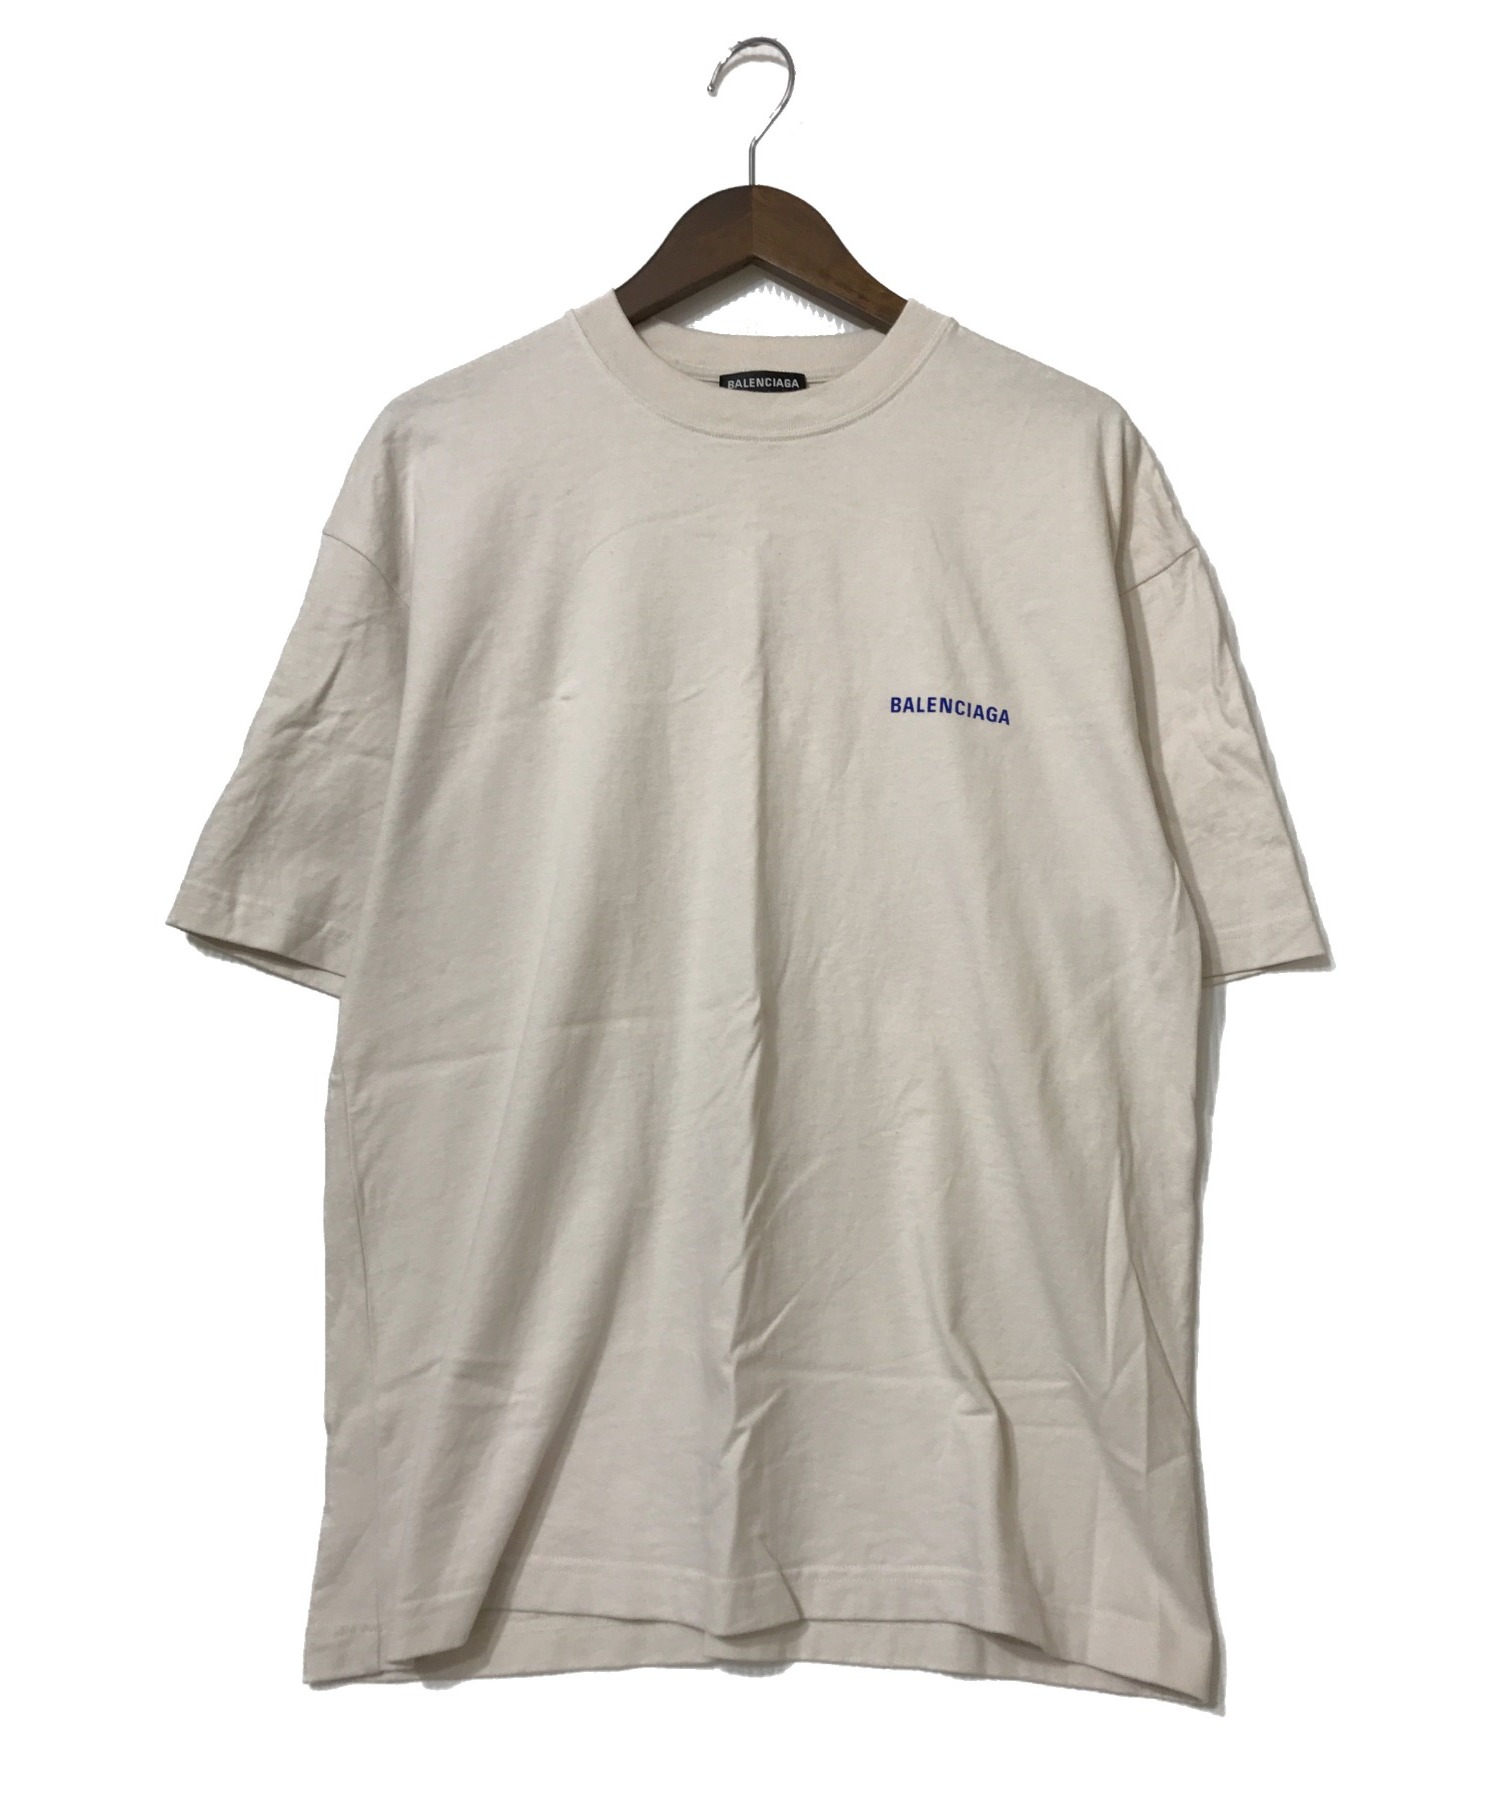 BALENCIAGA (バレンシアガ) 21SS ロゴミディアムフィットTシャツ ベージュ サイズ:XS